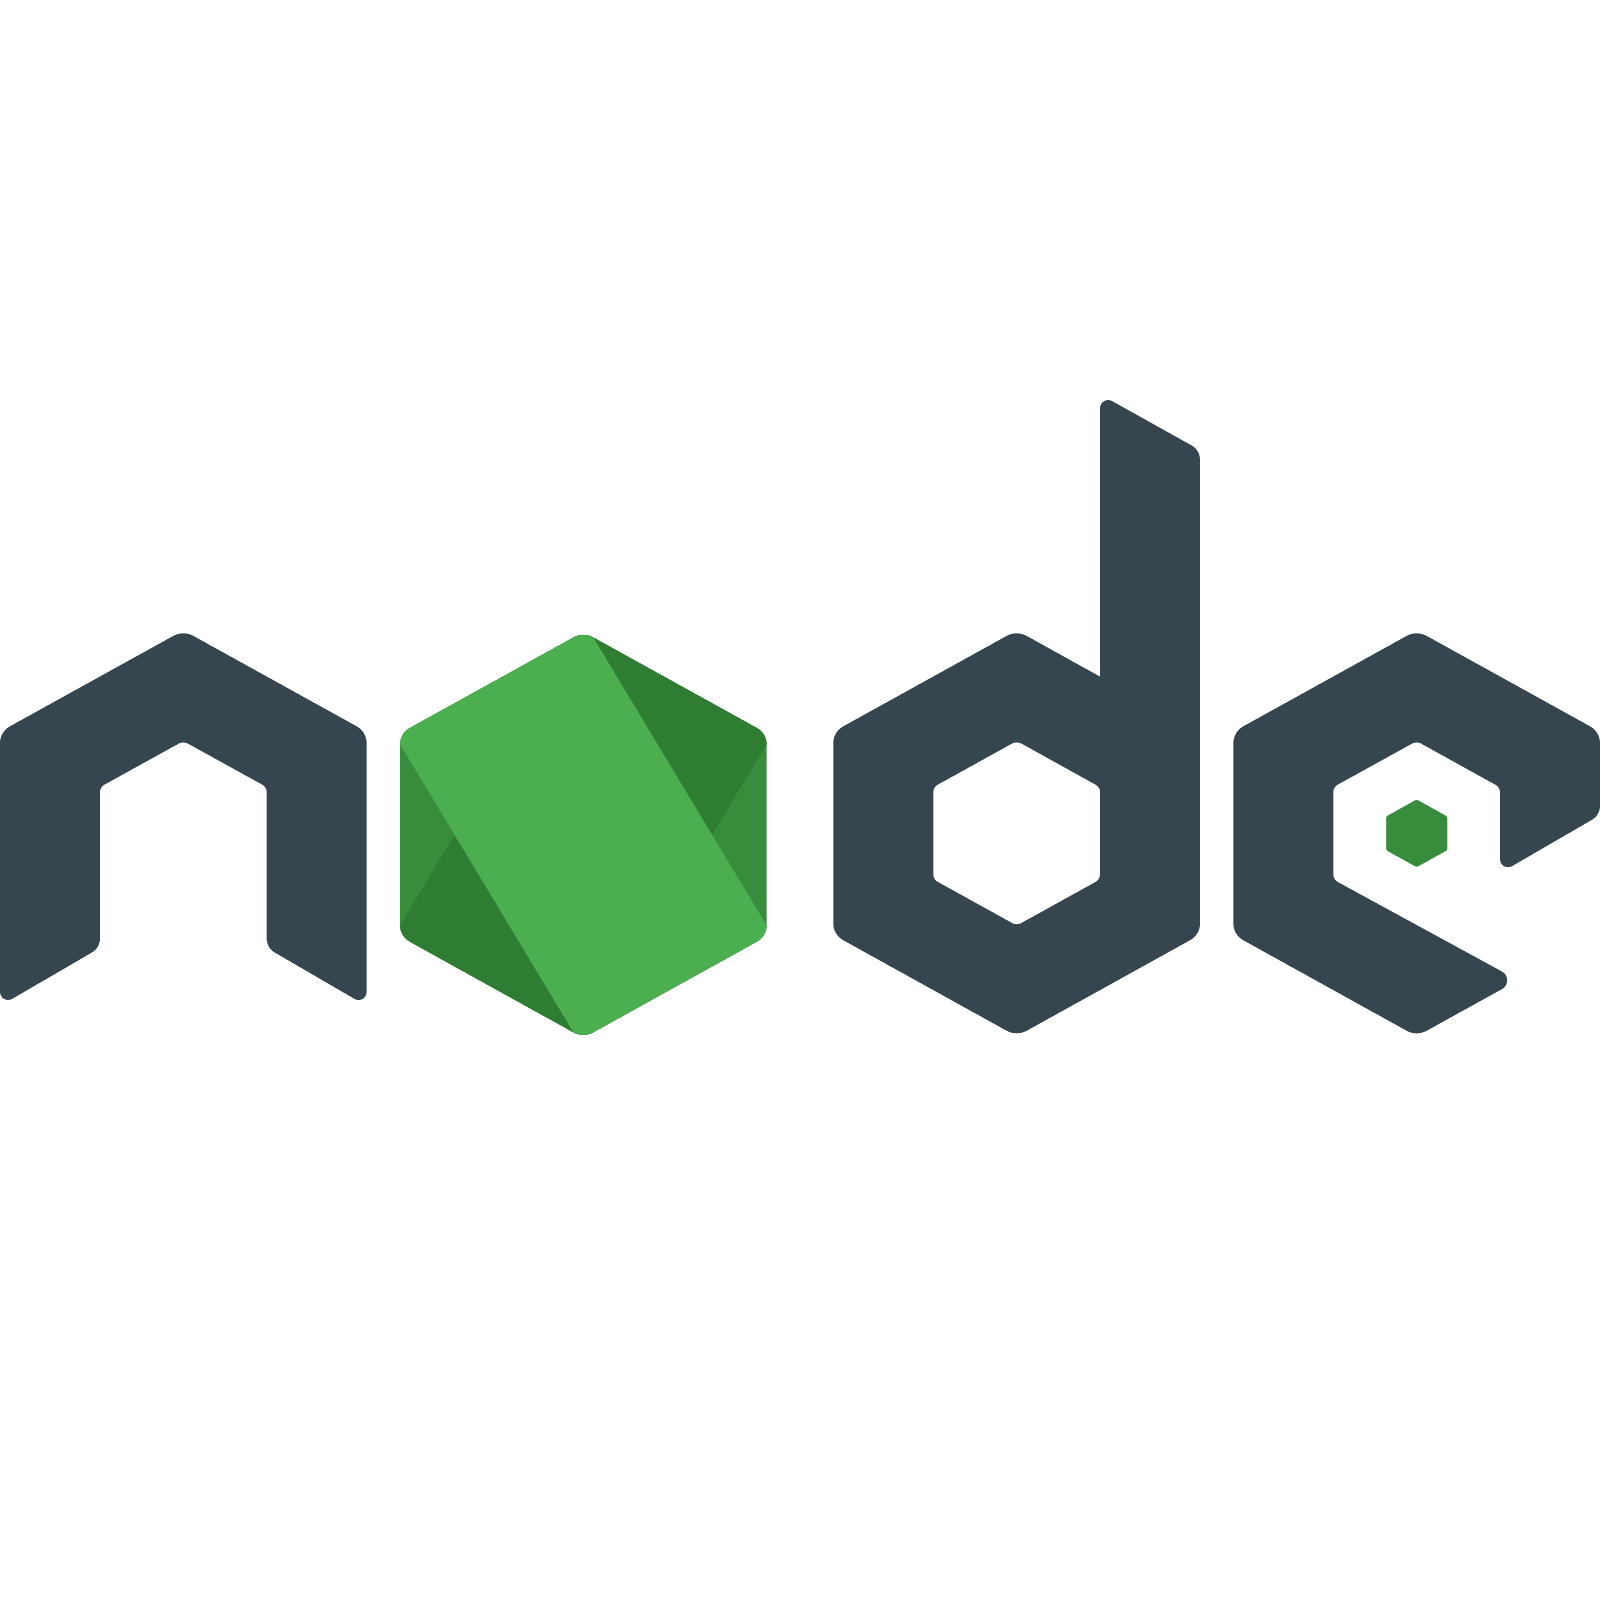 Node js com. Node js icon. Node js значок. Node js logo PNG. Последняя версия node js.